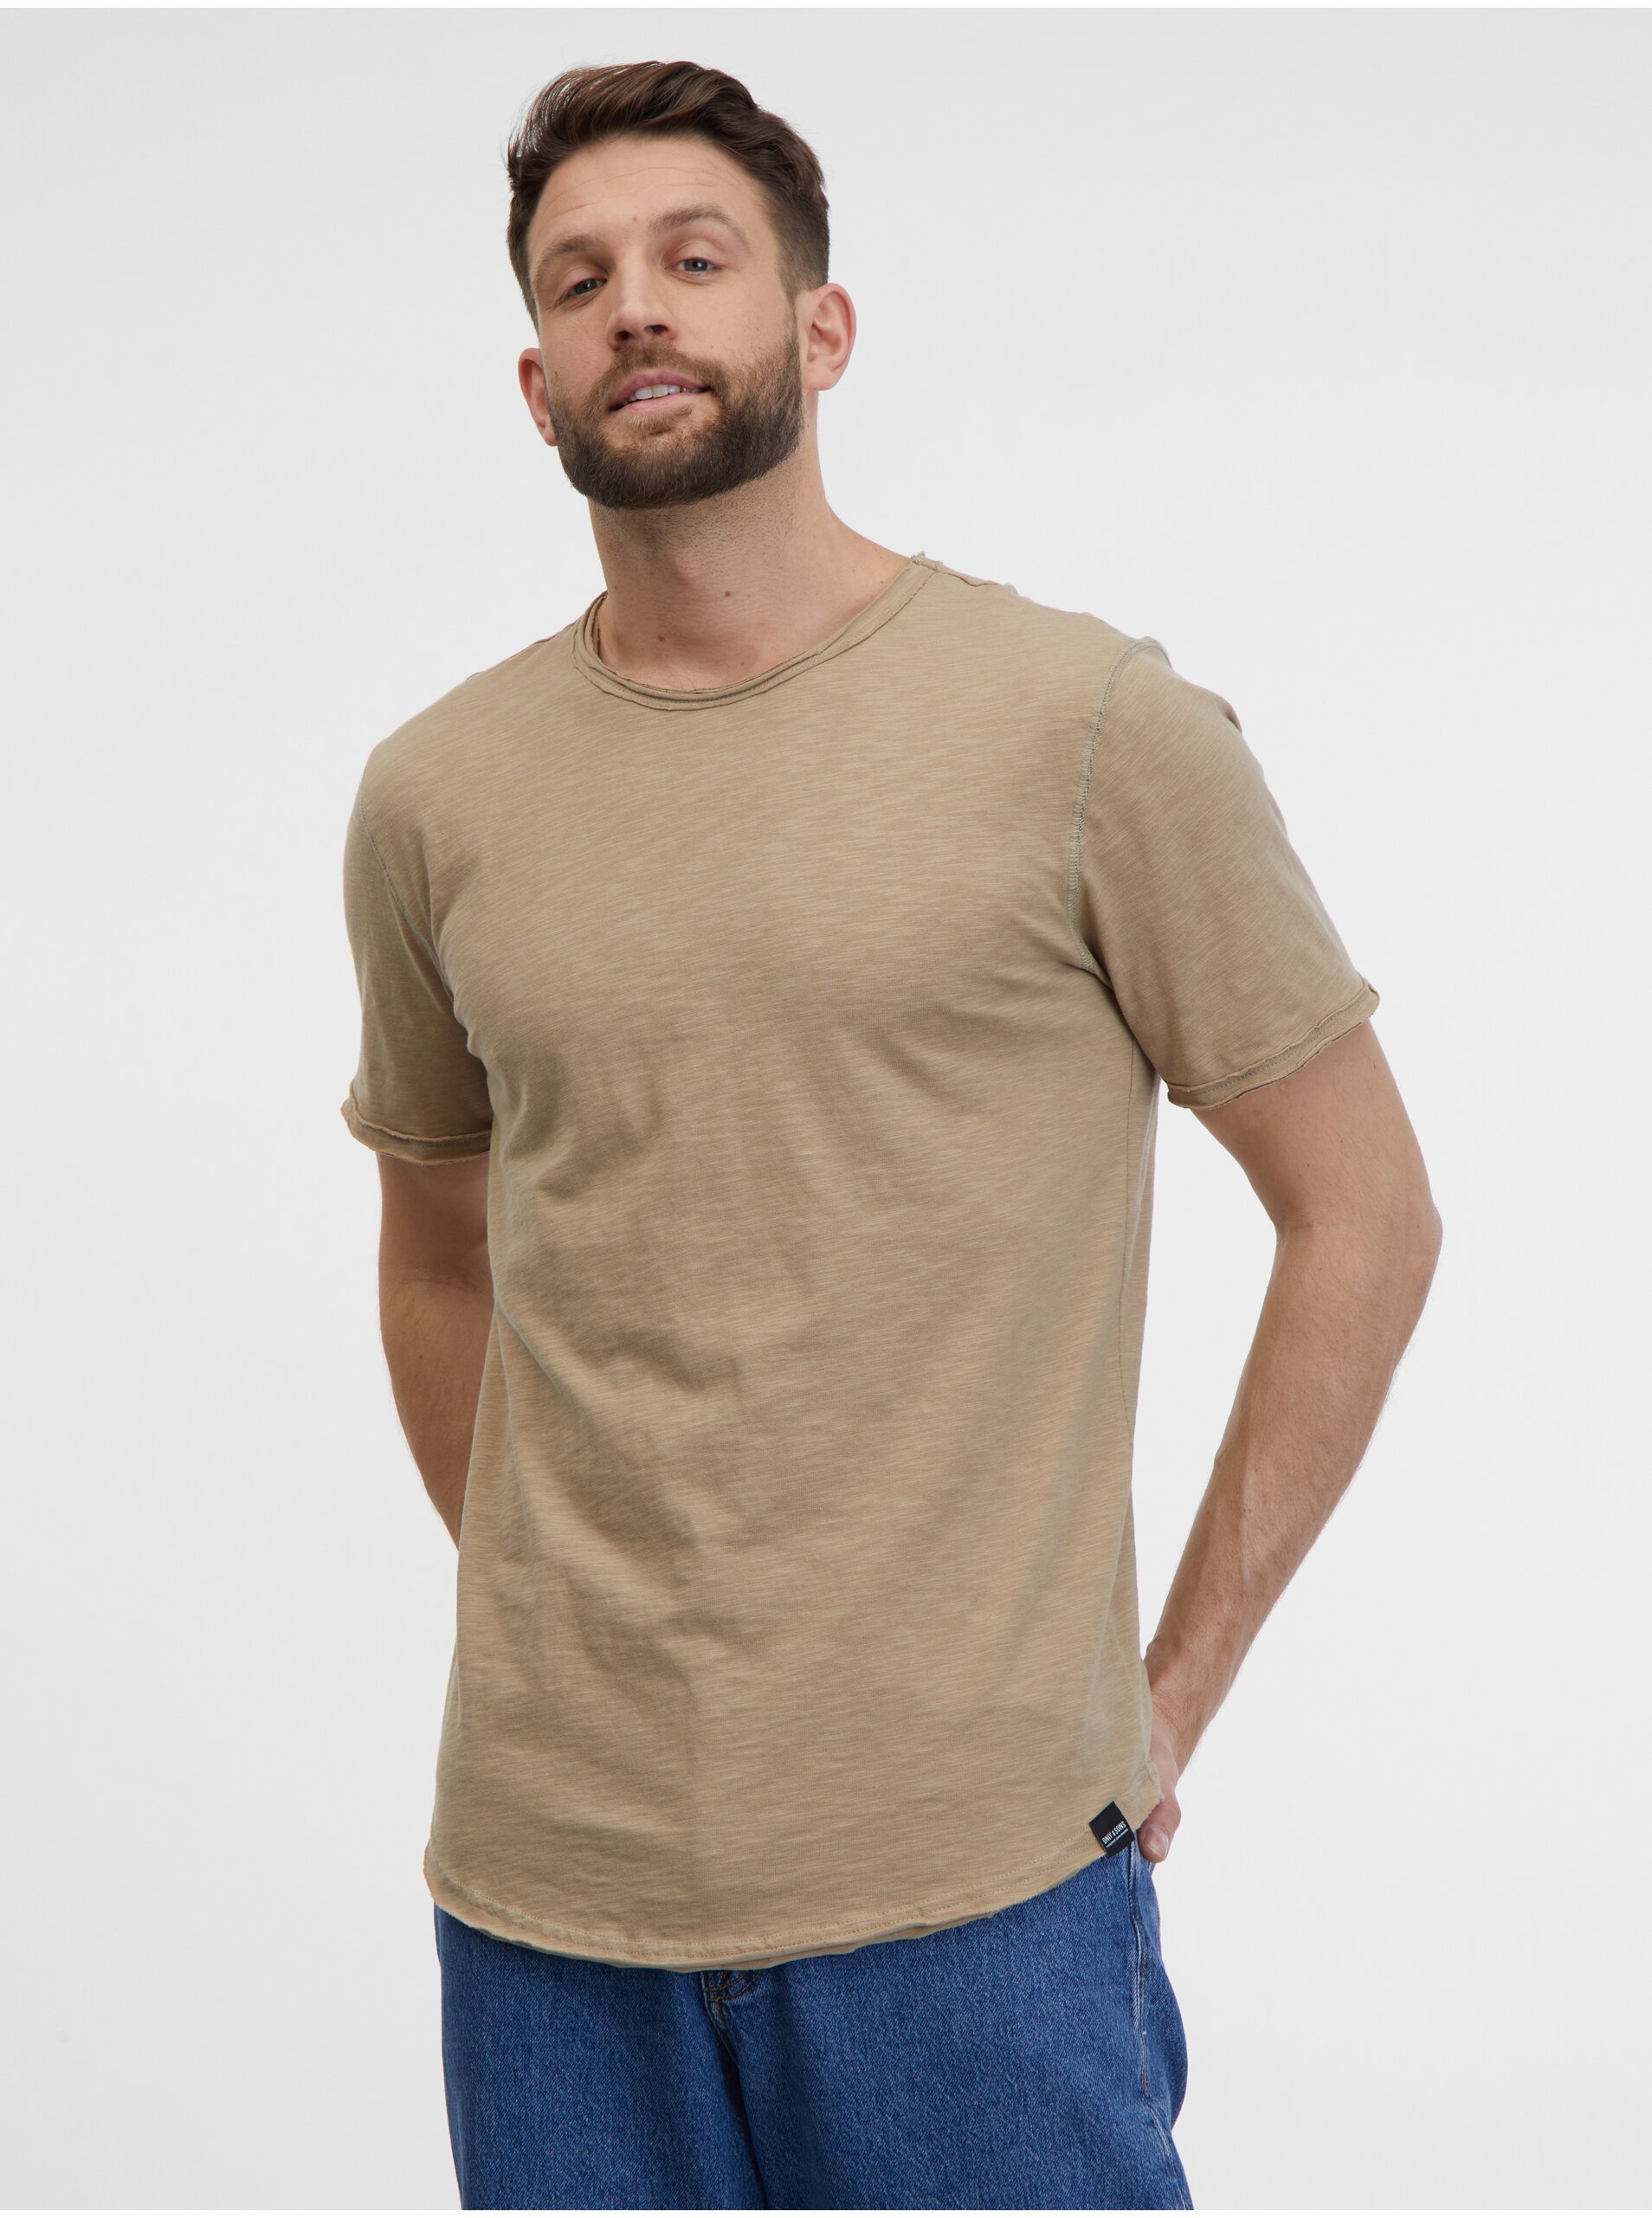 E-shop Béžové pánské žíhané basic tričko ONLY & SONS Benne